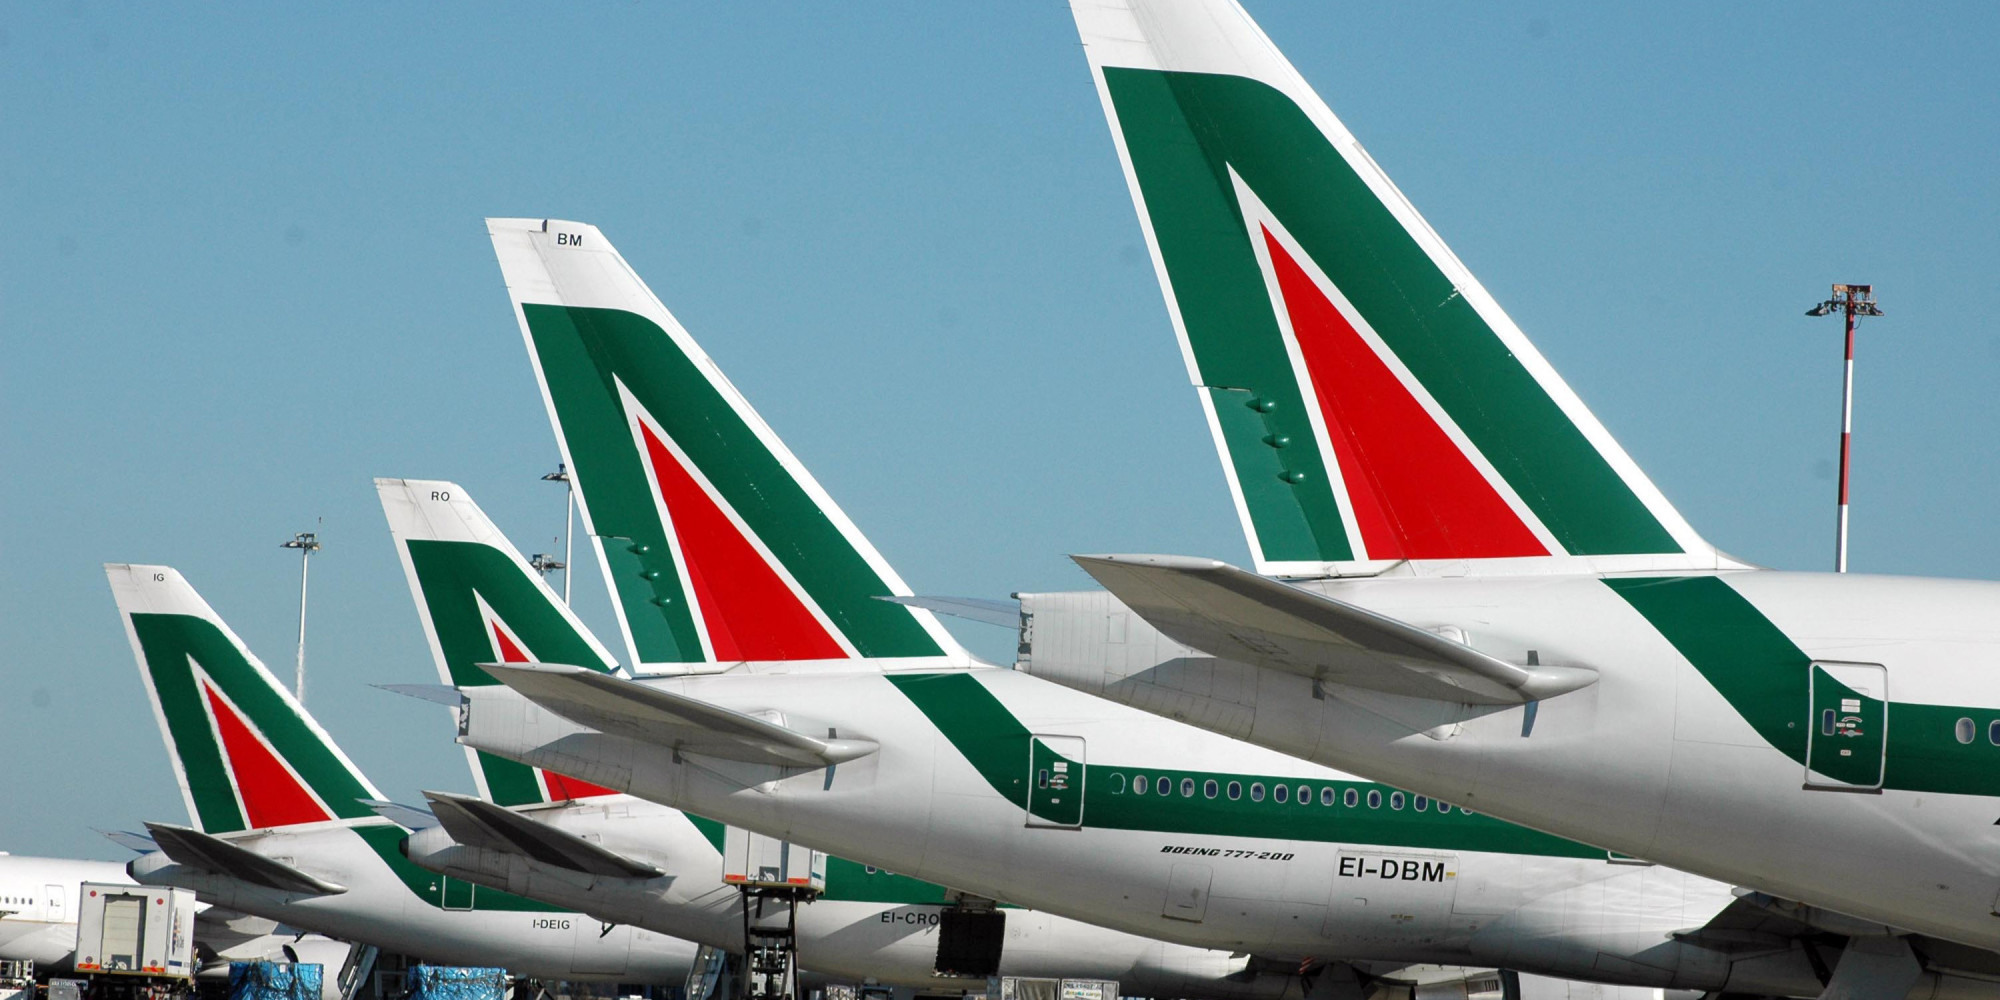 Προσφορά 500 εκ. ευρώ για τα αεροσκάφη και το προσωπικό της Alitalia από την Lufthansa